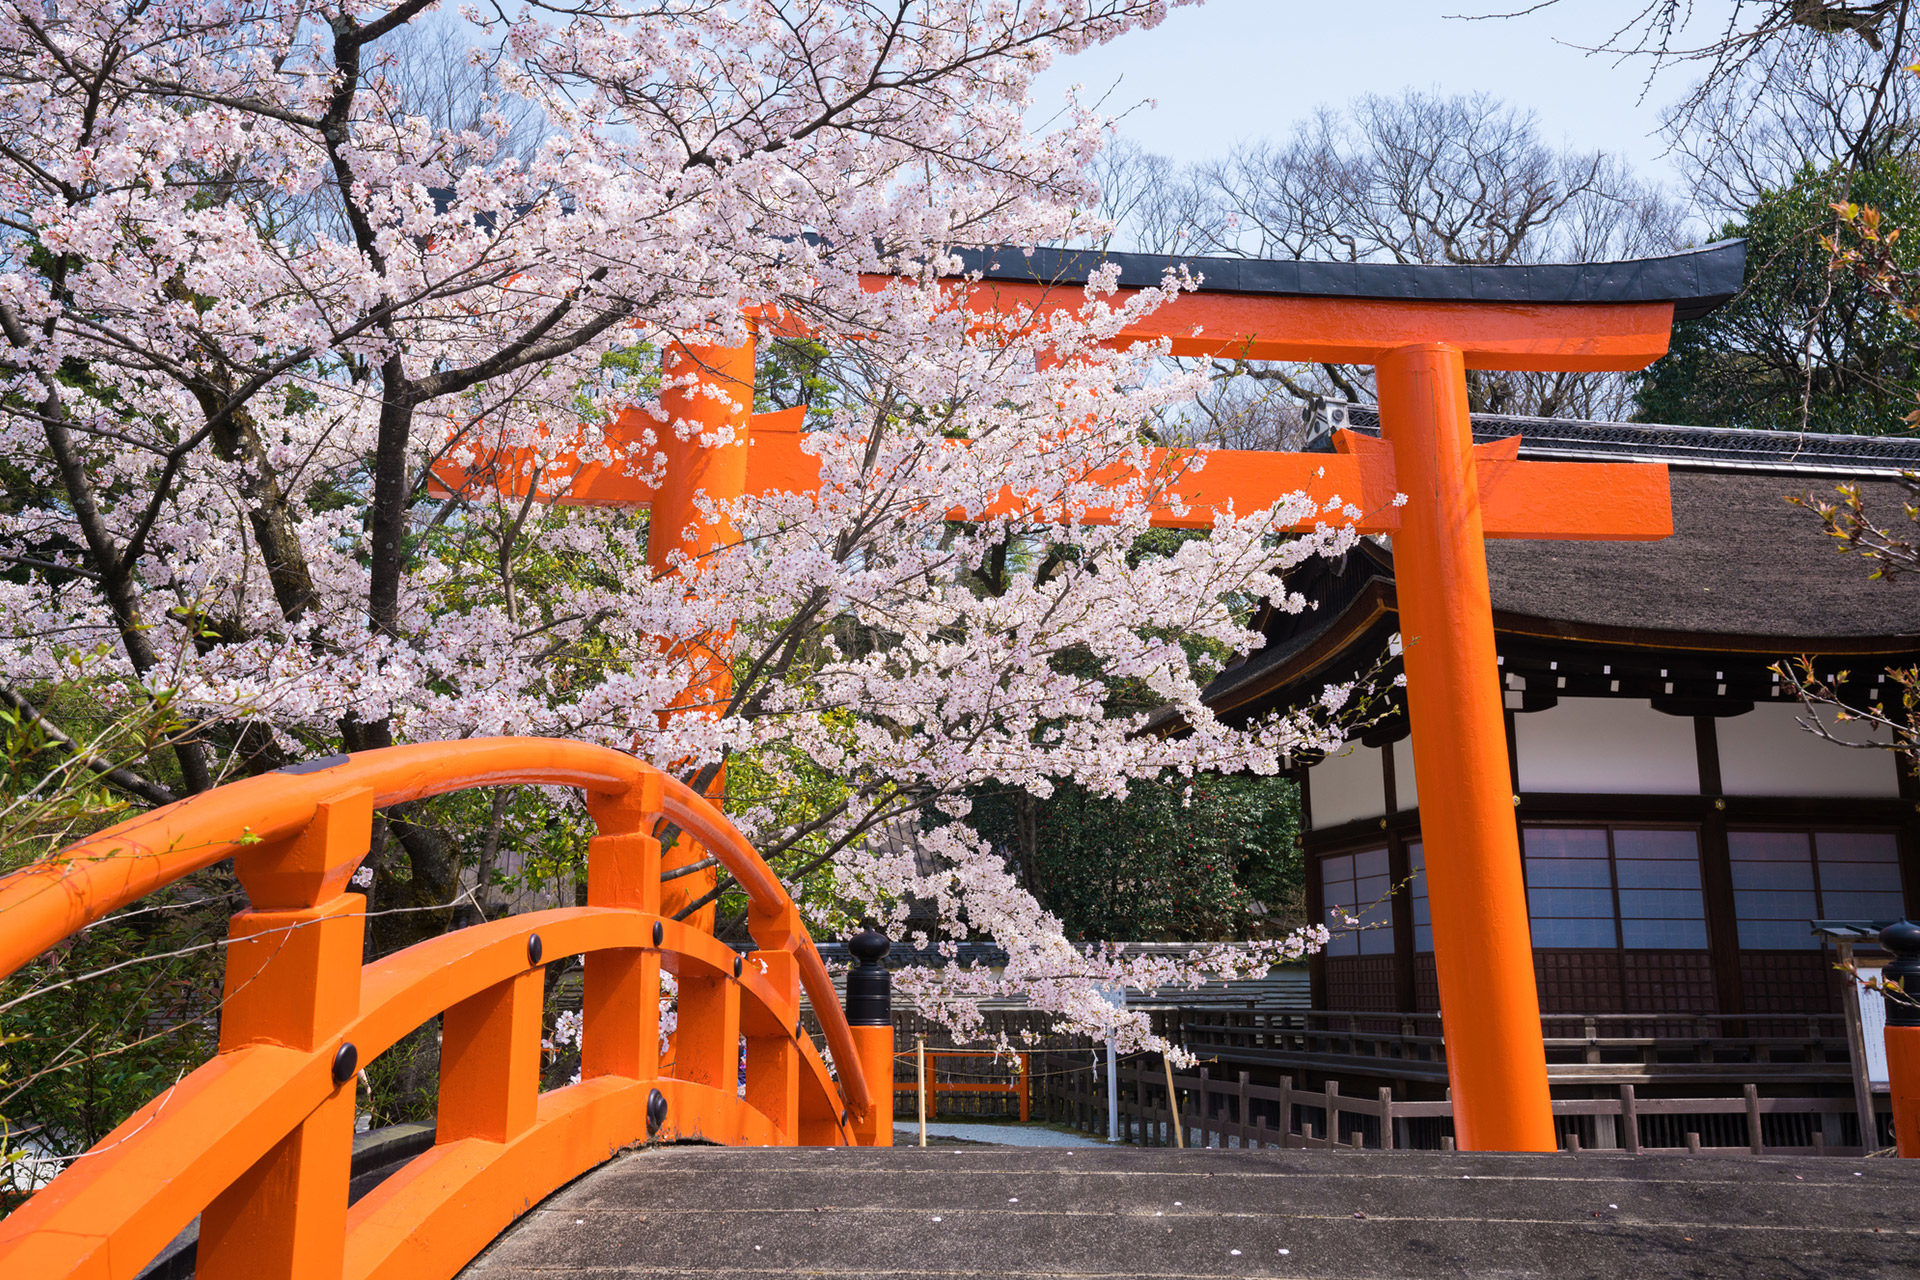 京都-神社-桜-イメージ